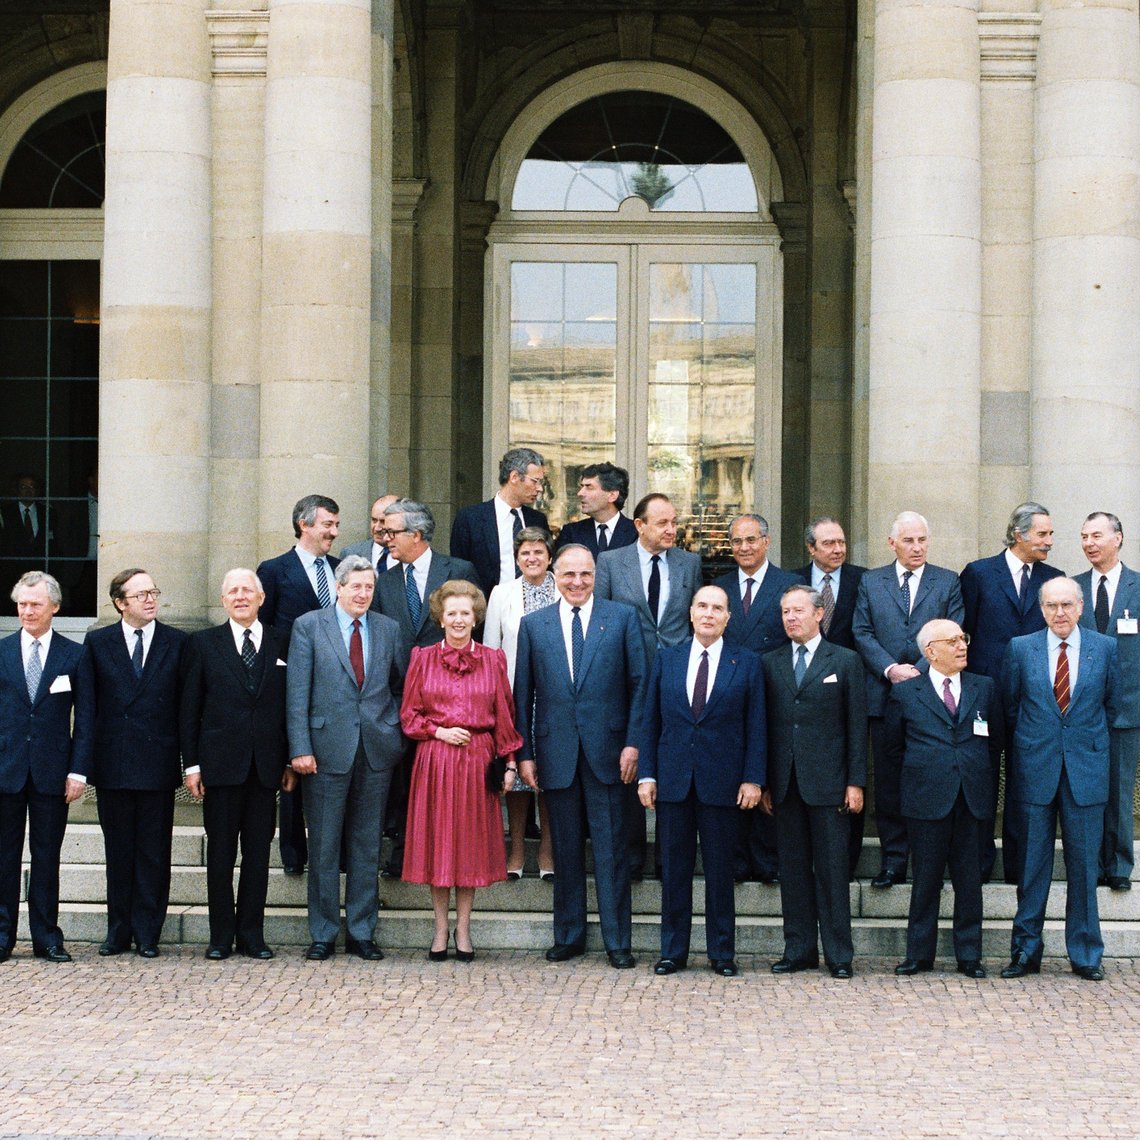 Aufnahme von den Staats- und Regierungschefs und Außenminister des Europäischen Rates